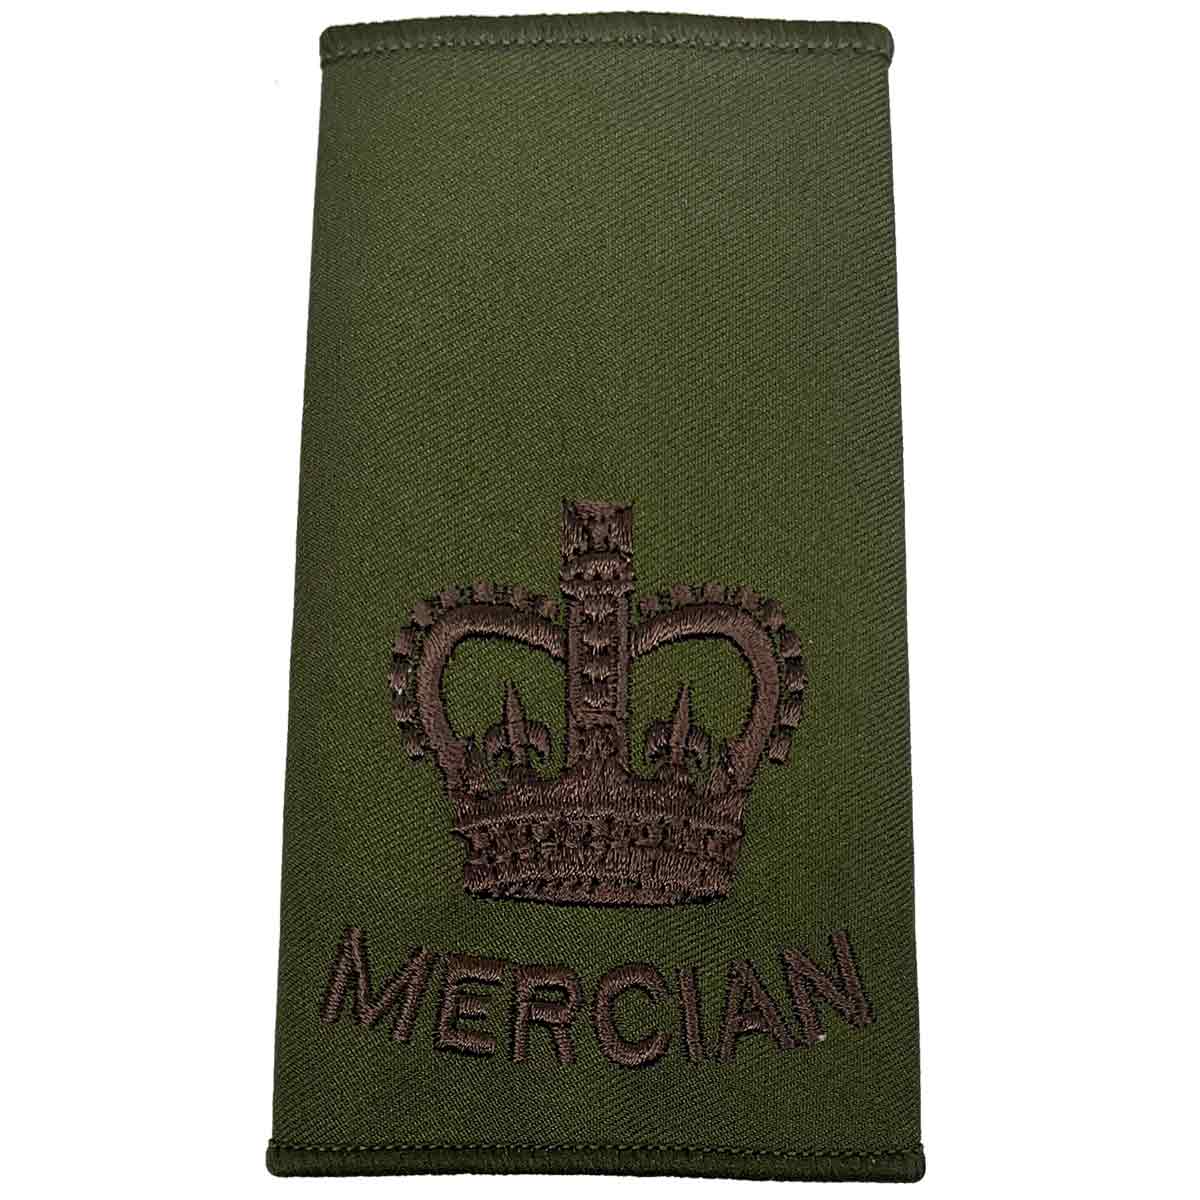 Mercian Regiment Olive Green Rank Slides (Pair) - John Bull Clothing